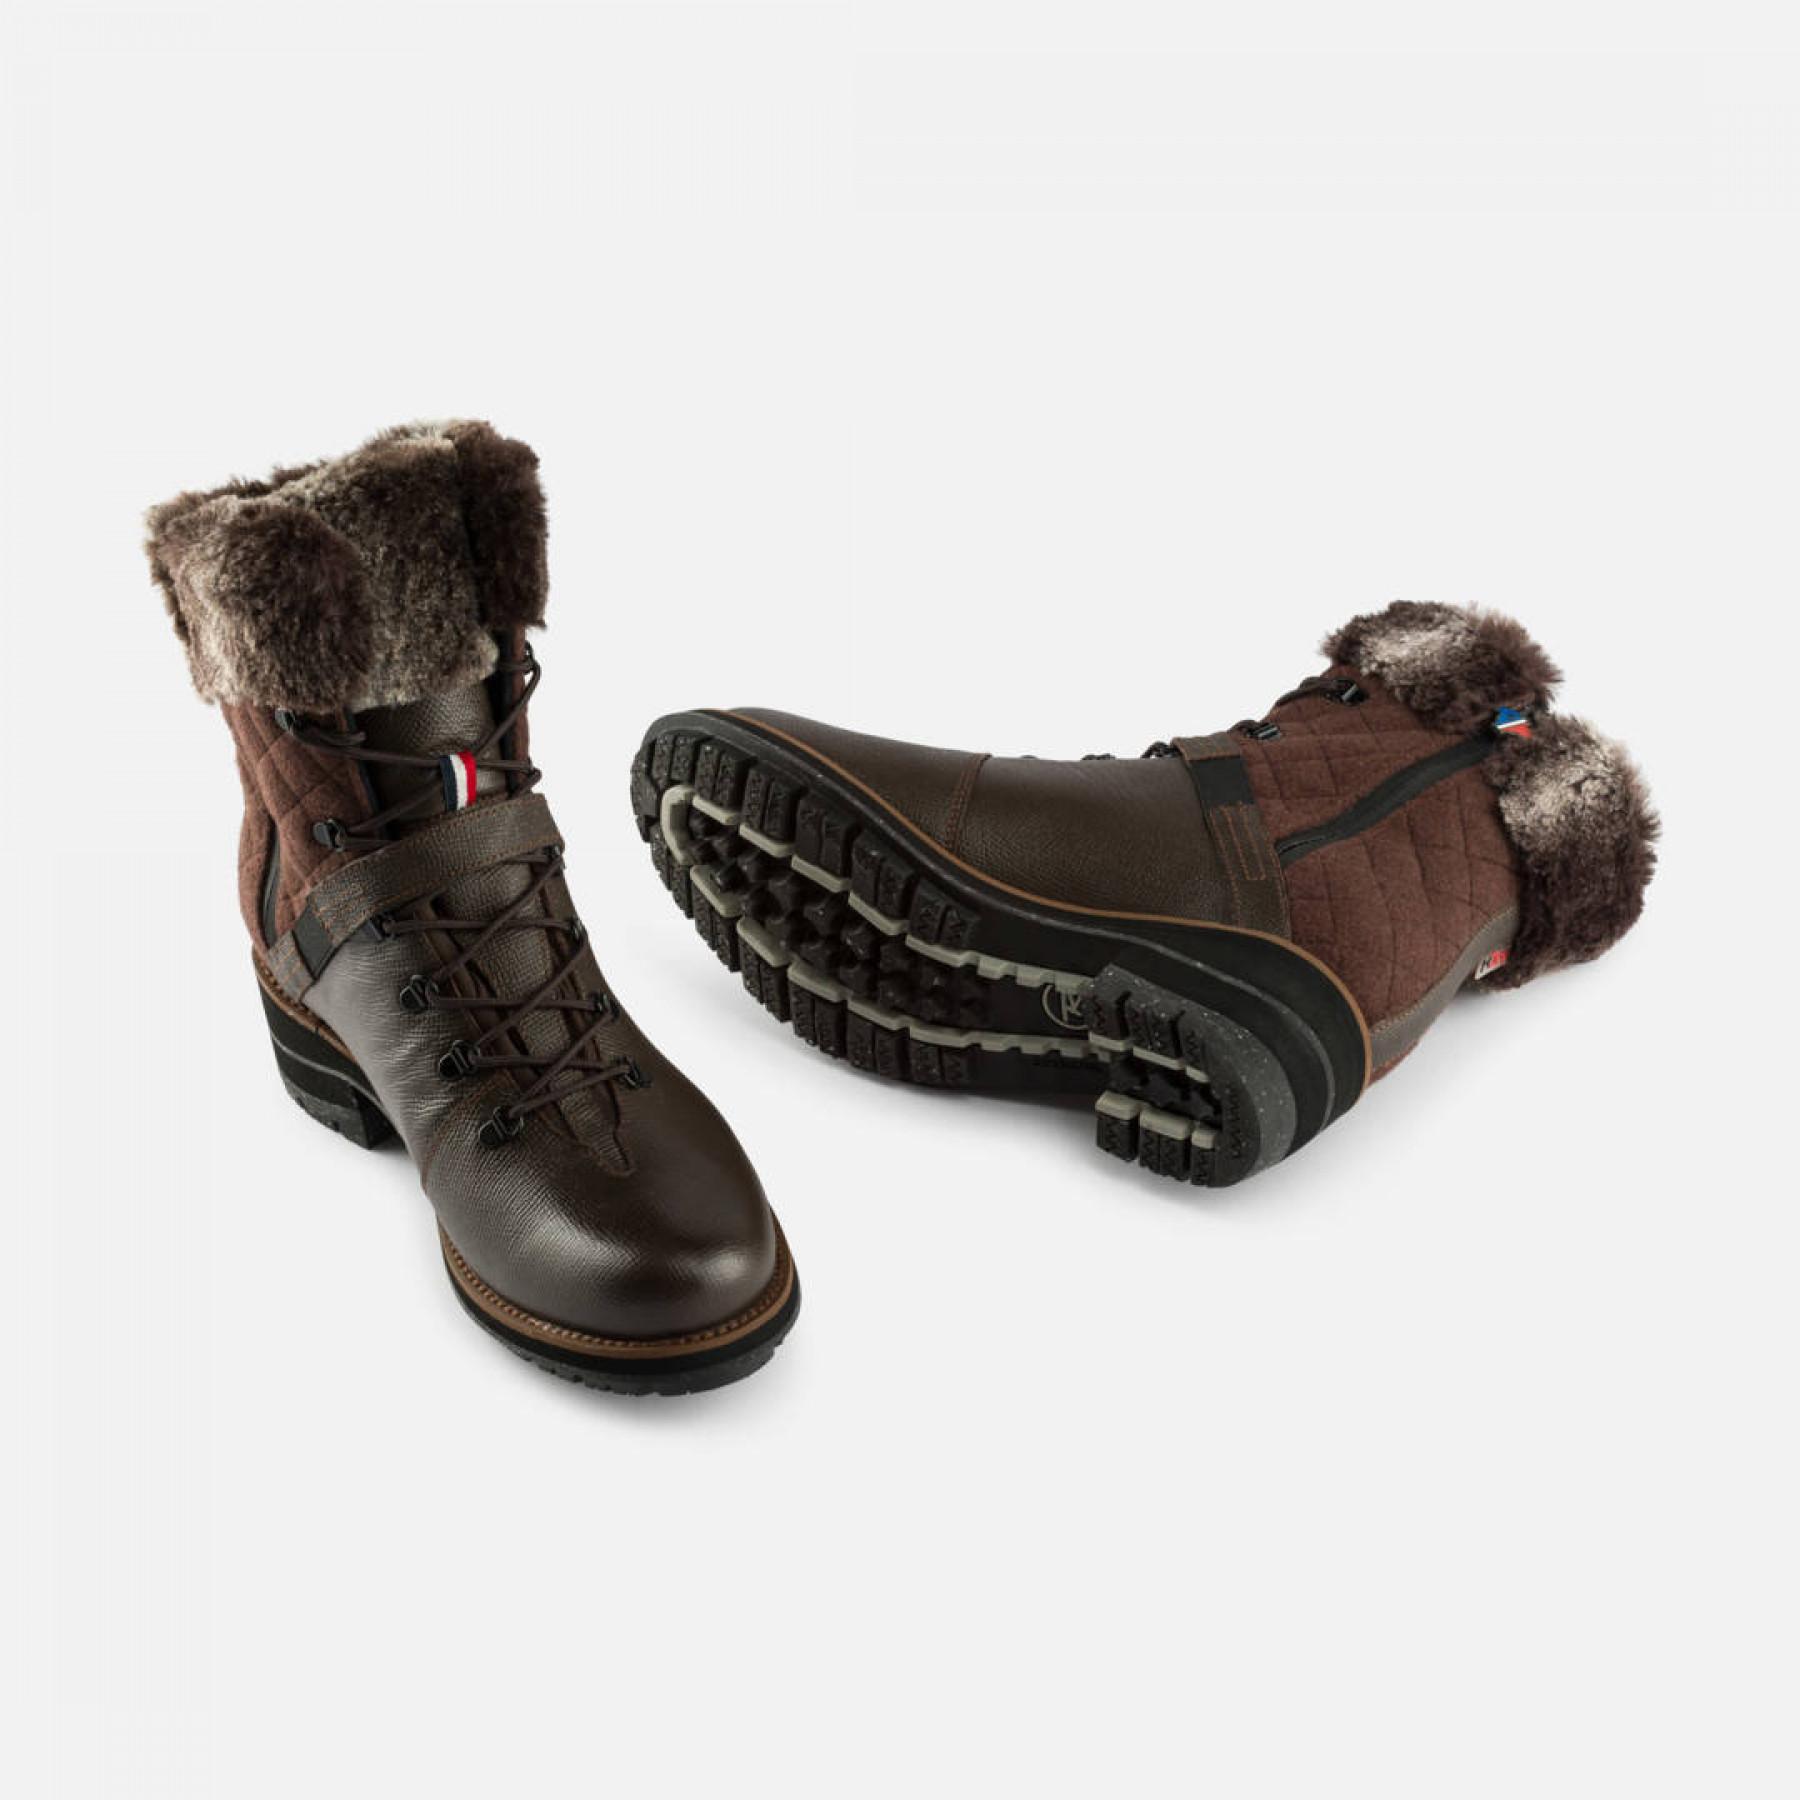 Schuhe für Frauen Rossignol 1907 Megeve LTD.